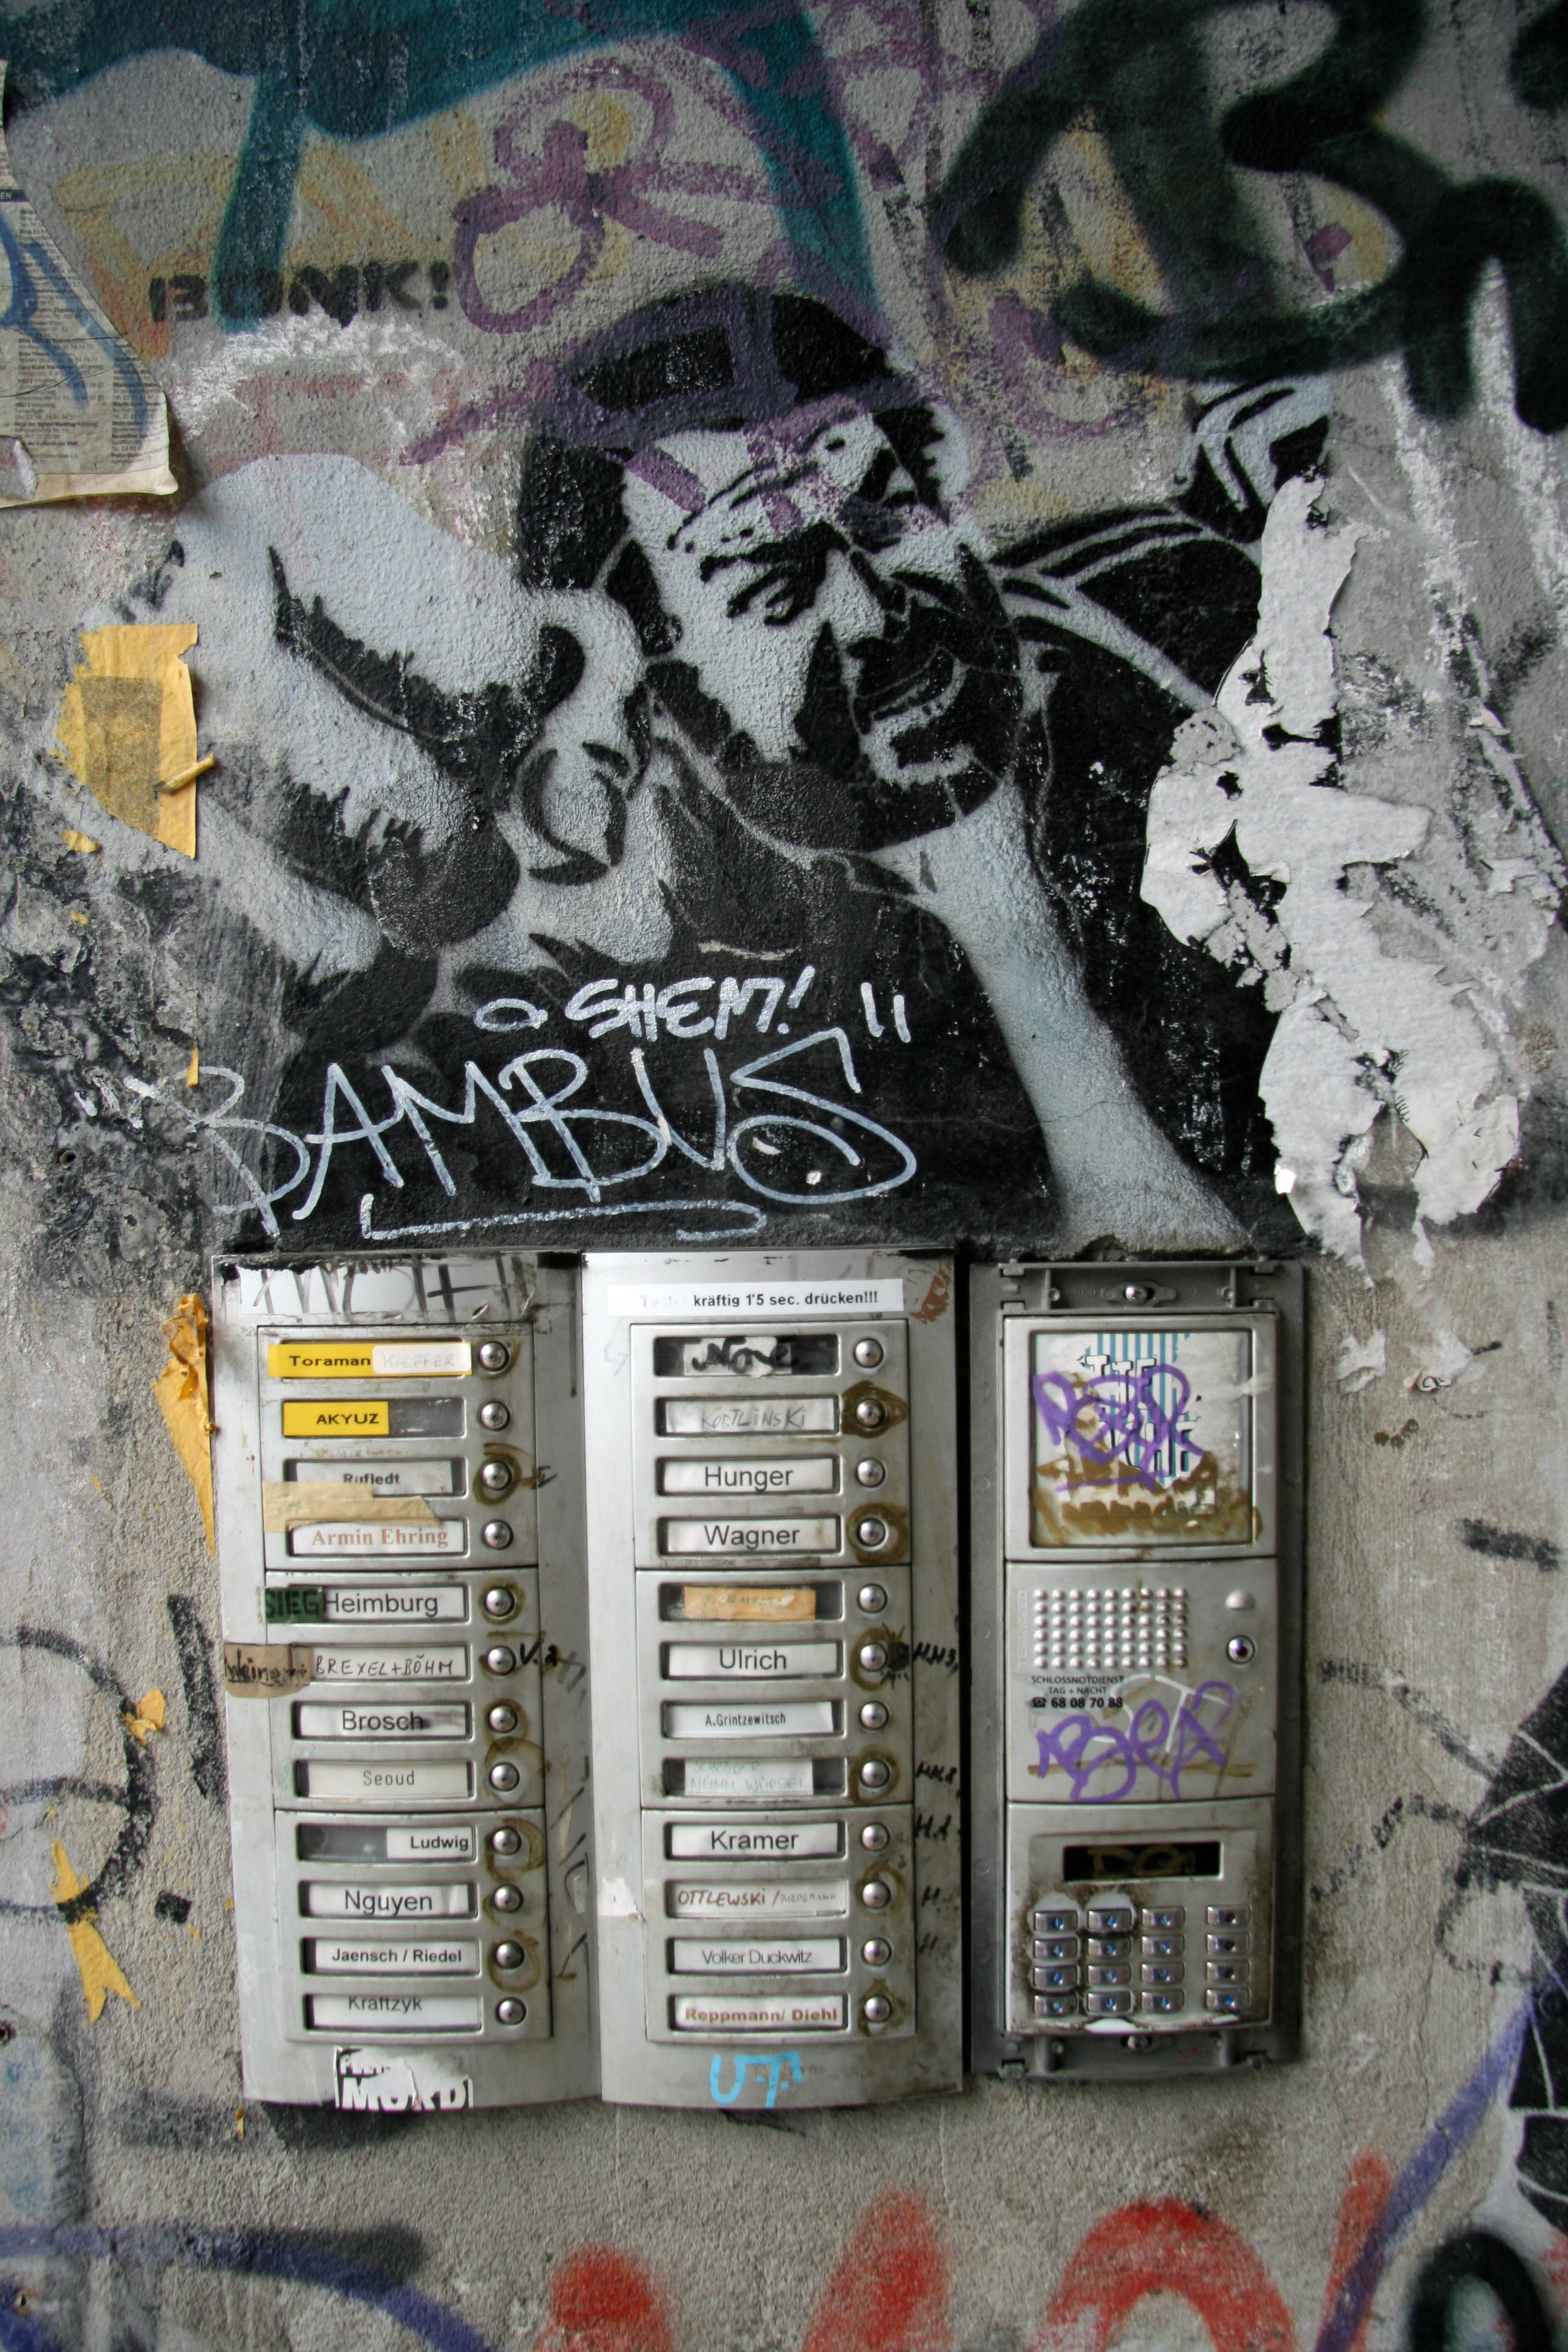 Punchy: Bud Spencer Street Art by Bonk! in Berlin